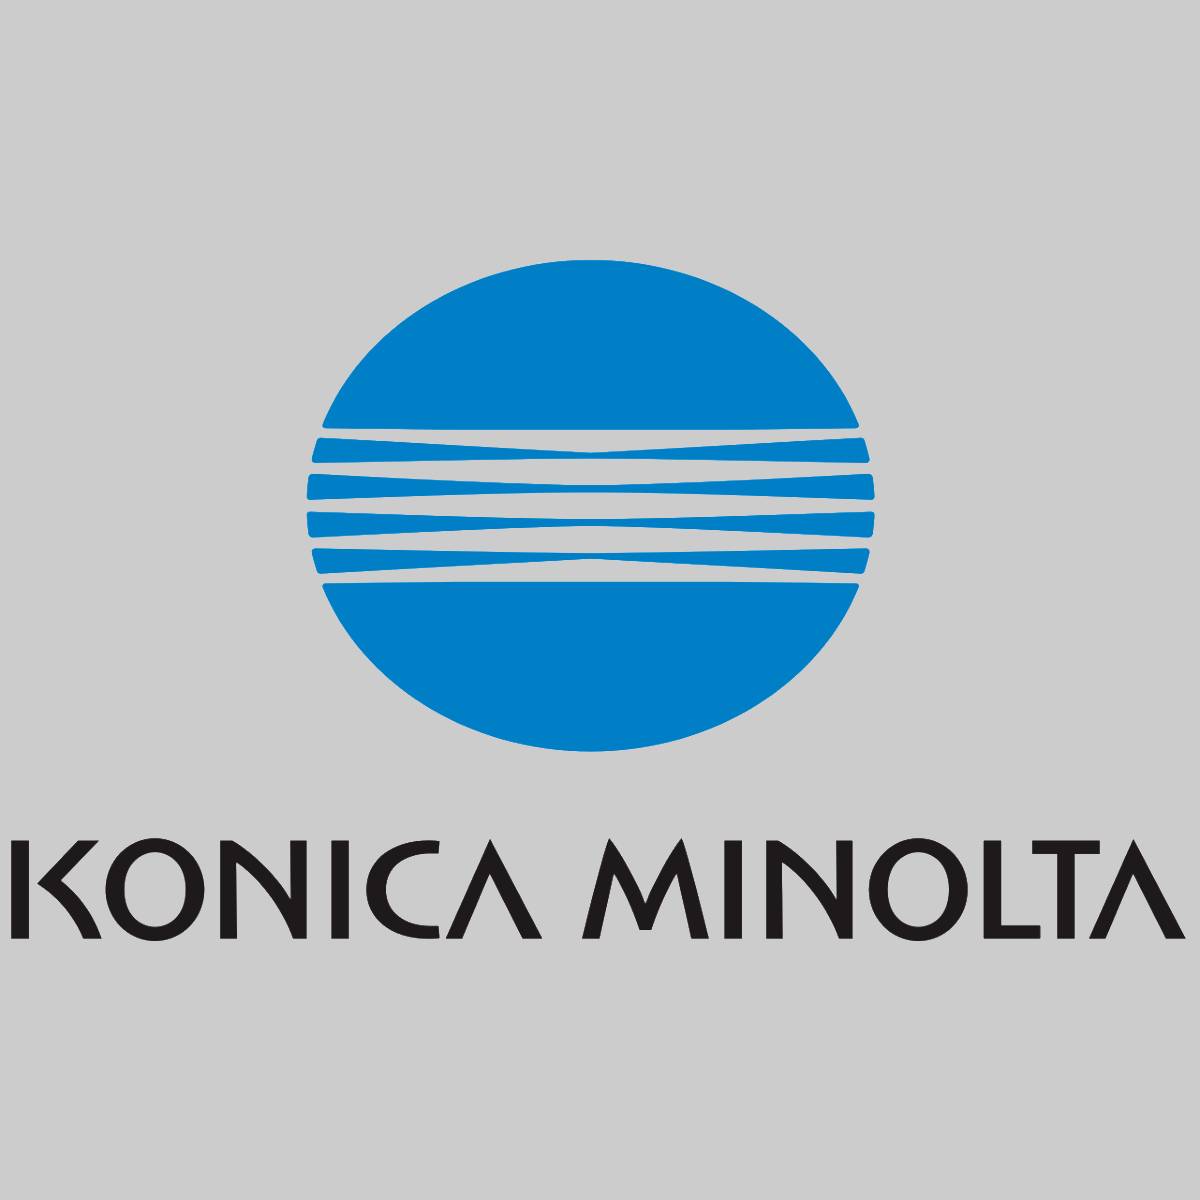 "Originele Konica Minolta Toner Magenta A0V30CH voor Magicolor 1650 EN NIEUW OVP